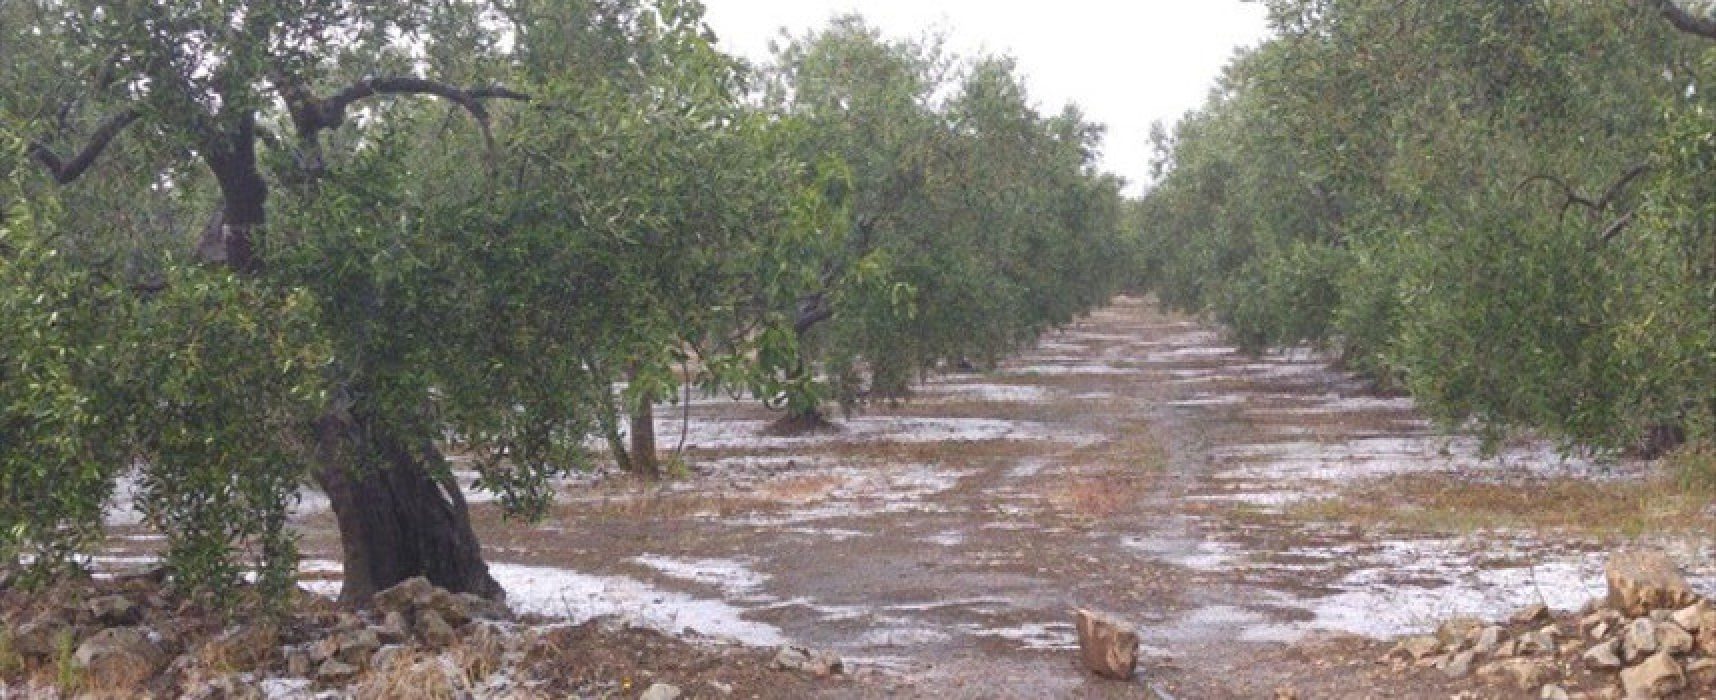 Filiera agricola olivicola, programmato incontro con operatori di settore per interventi necessari